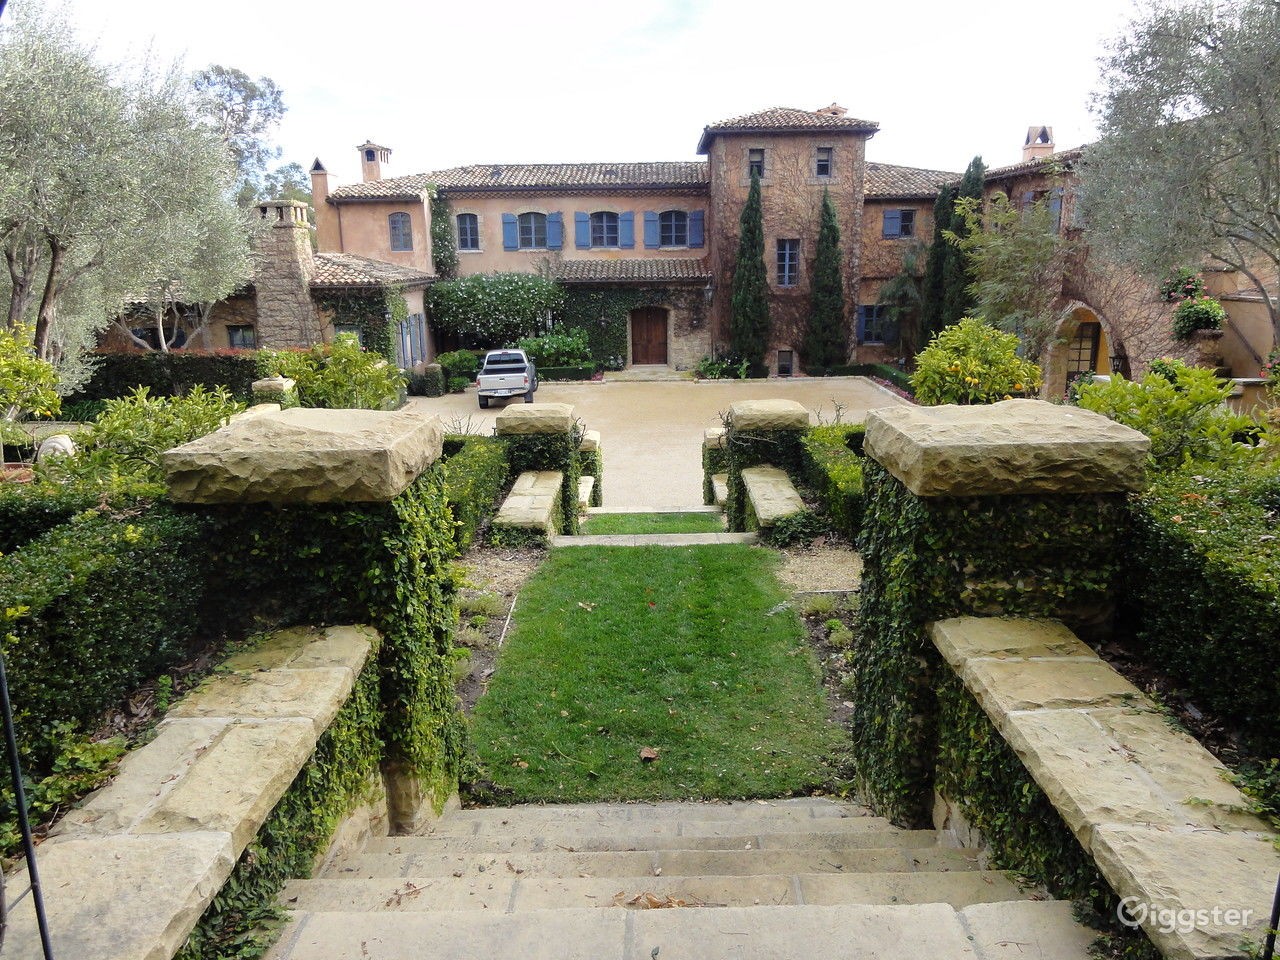 Em 2020, a mansão Montecito na Califórnia, de Harry e Meghan, foi listada para aluguel a US$ 700 por hora para sessões de fotos e videoclipes — Foto: Giggster / Divulgação